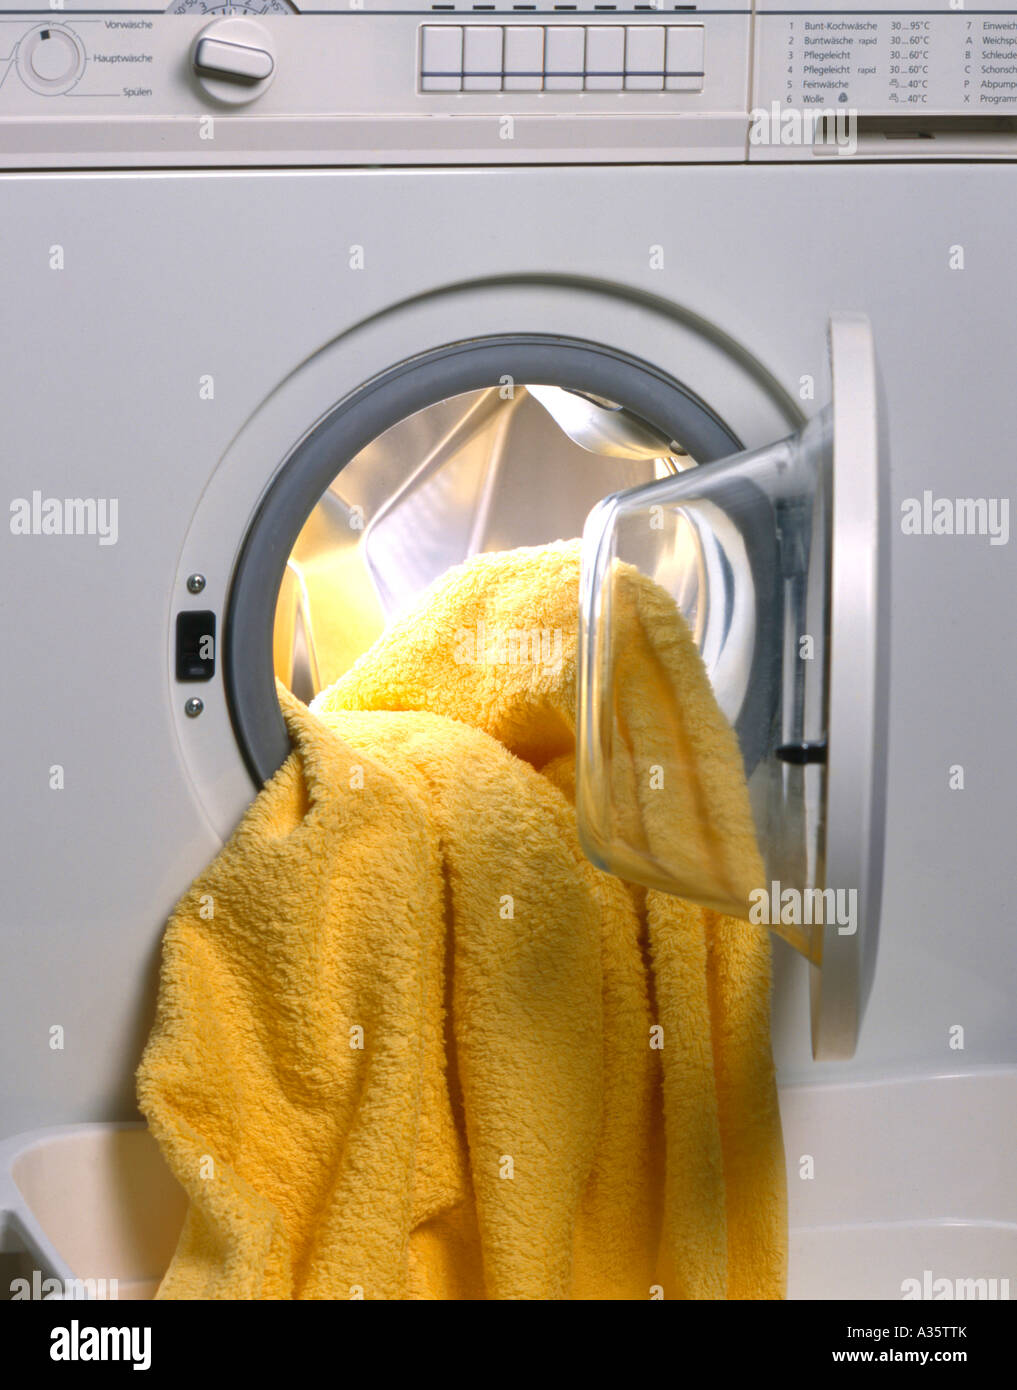 Waschmaschine, Washing Machine Stock Photo